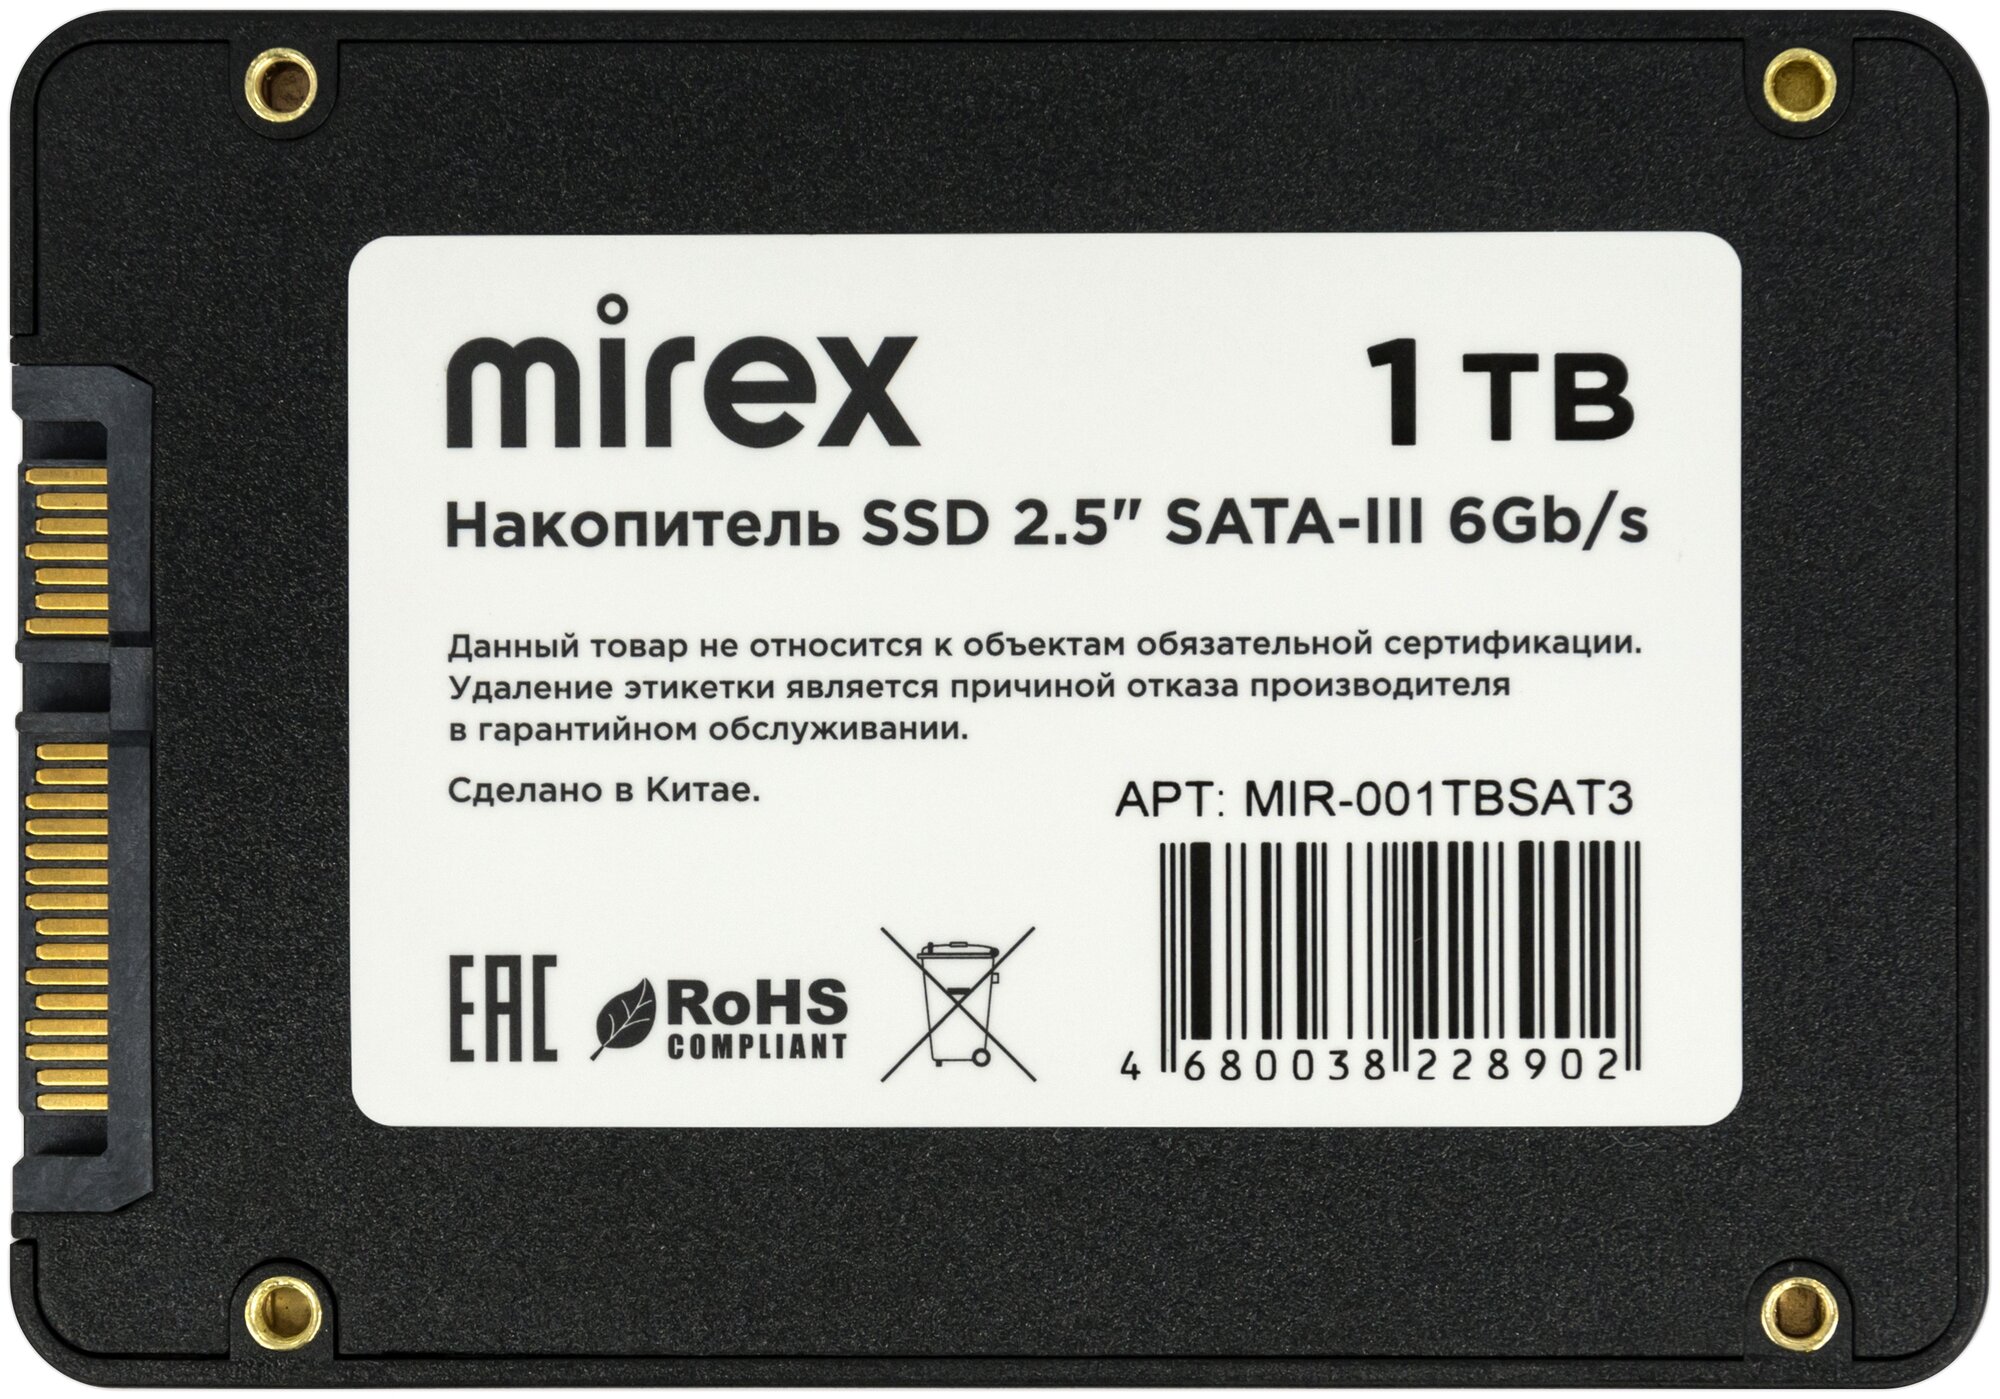 Накопитель SSD Mirex 1Tb 13640-001TBSAT3 - фото №2